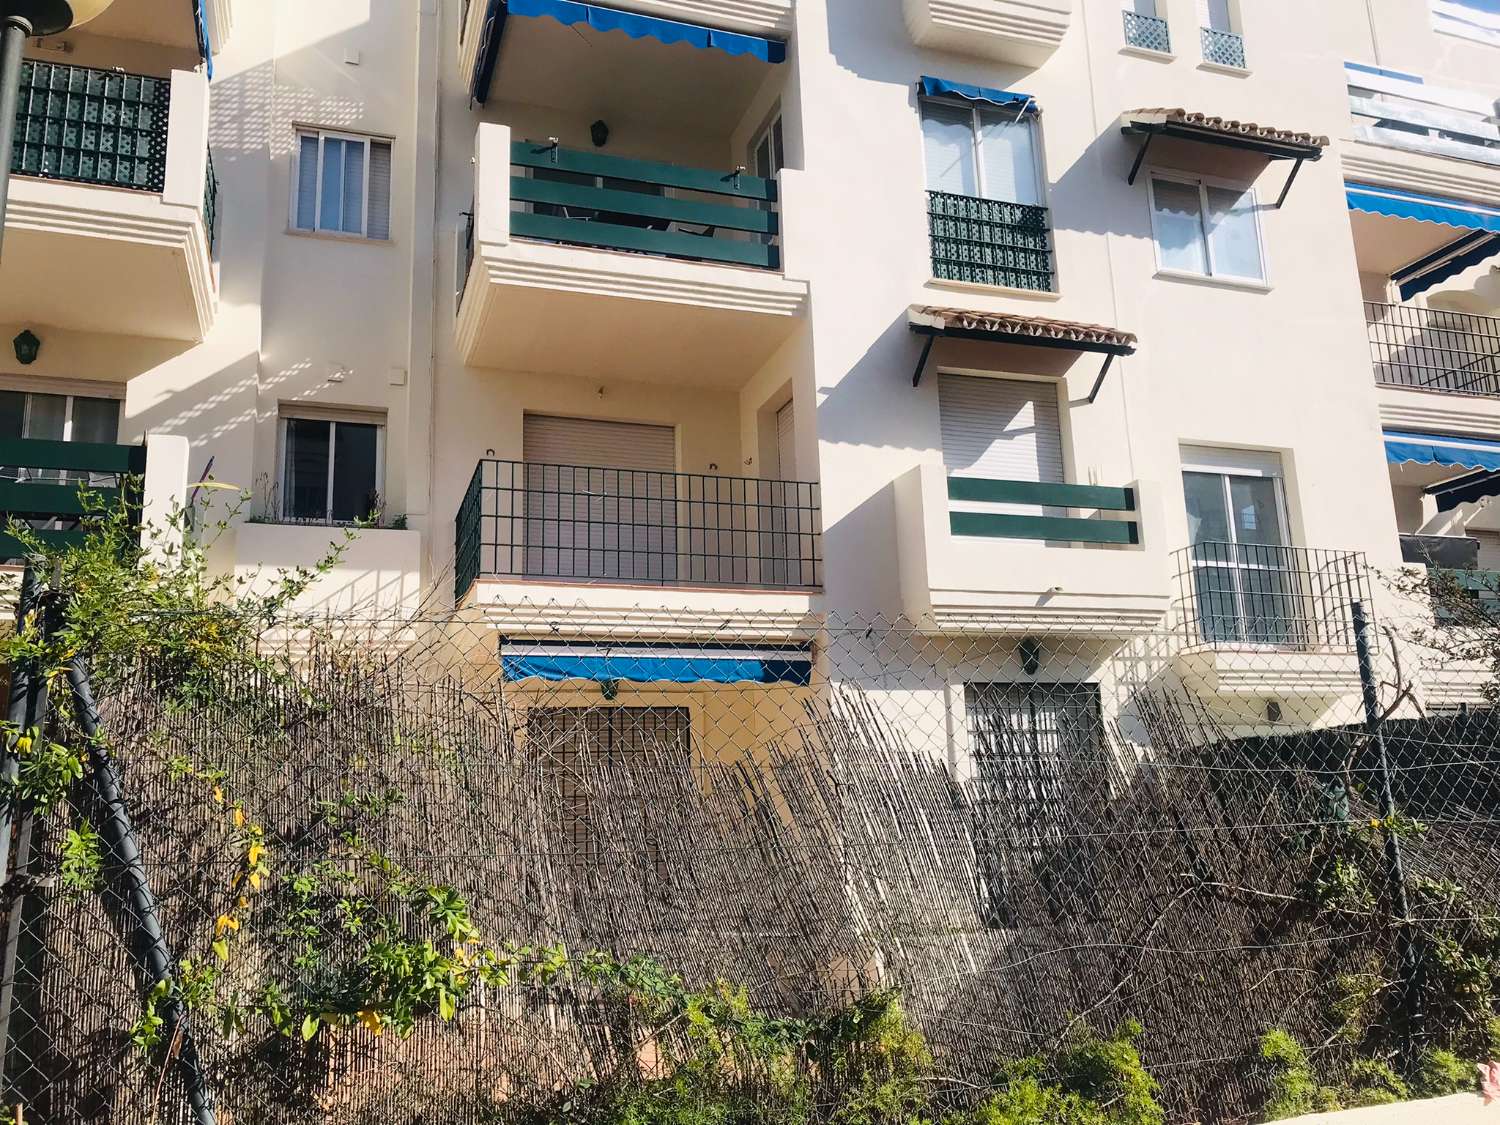 Grazioso appartamento in vendita. Posizione comoda vicino a Puerto Banus, Marbella.